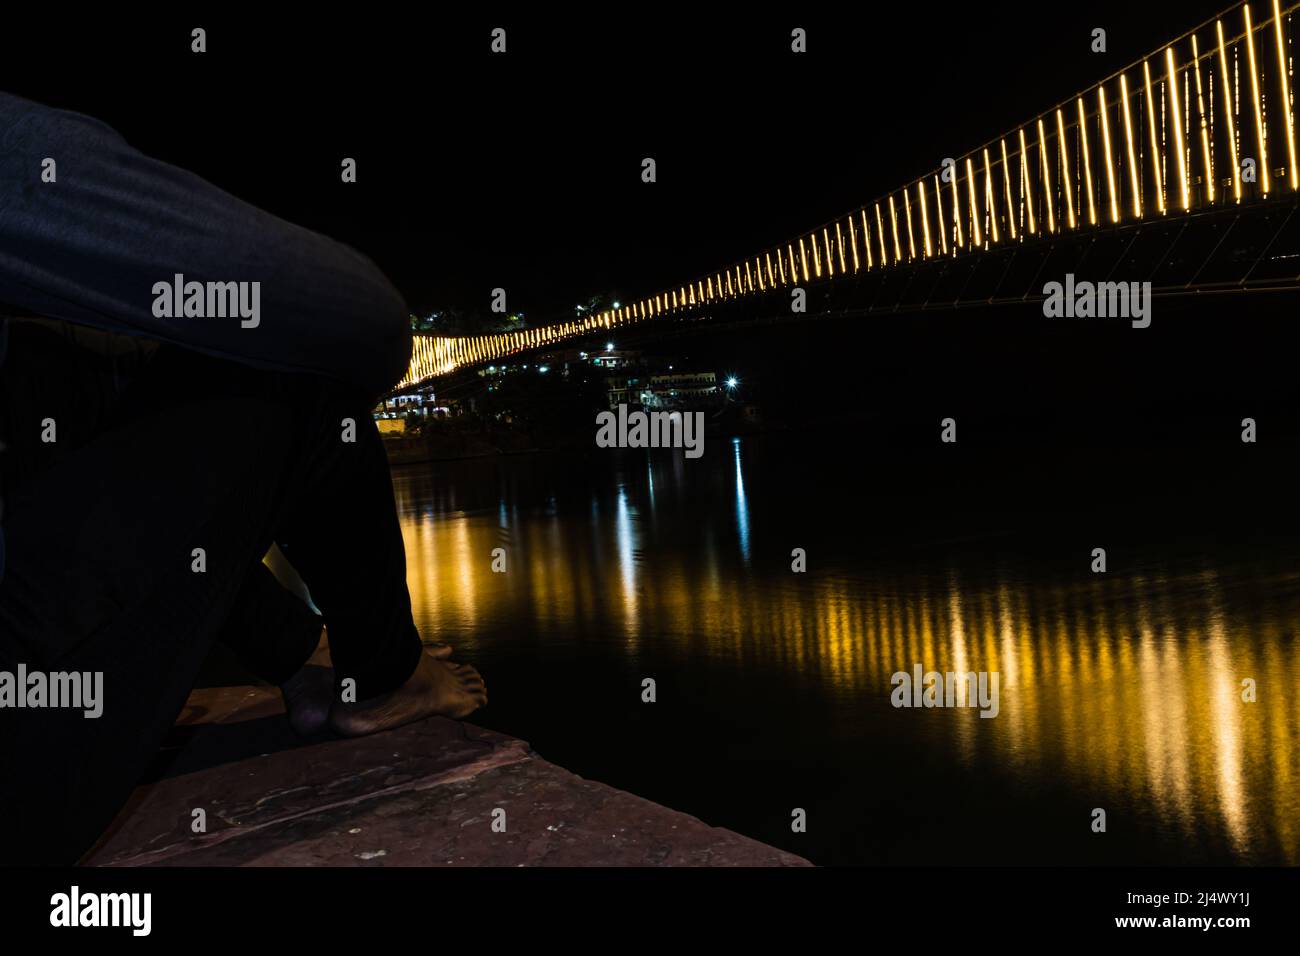 l'uomo che guarda il ponte sospeso in ferro illuminato con le luci del traghetto con l'immagine di riflessione dell'acqua è preso a rishikesh uttrakhand india. Foto Stock